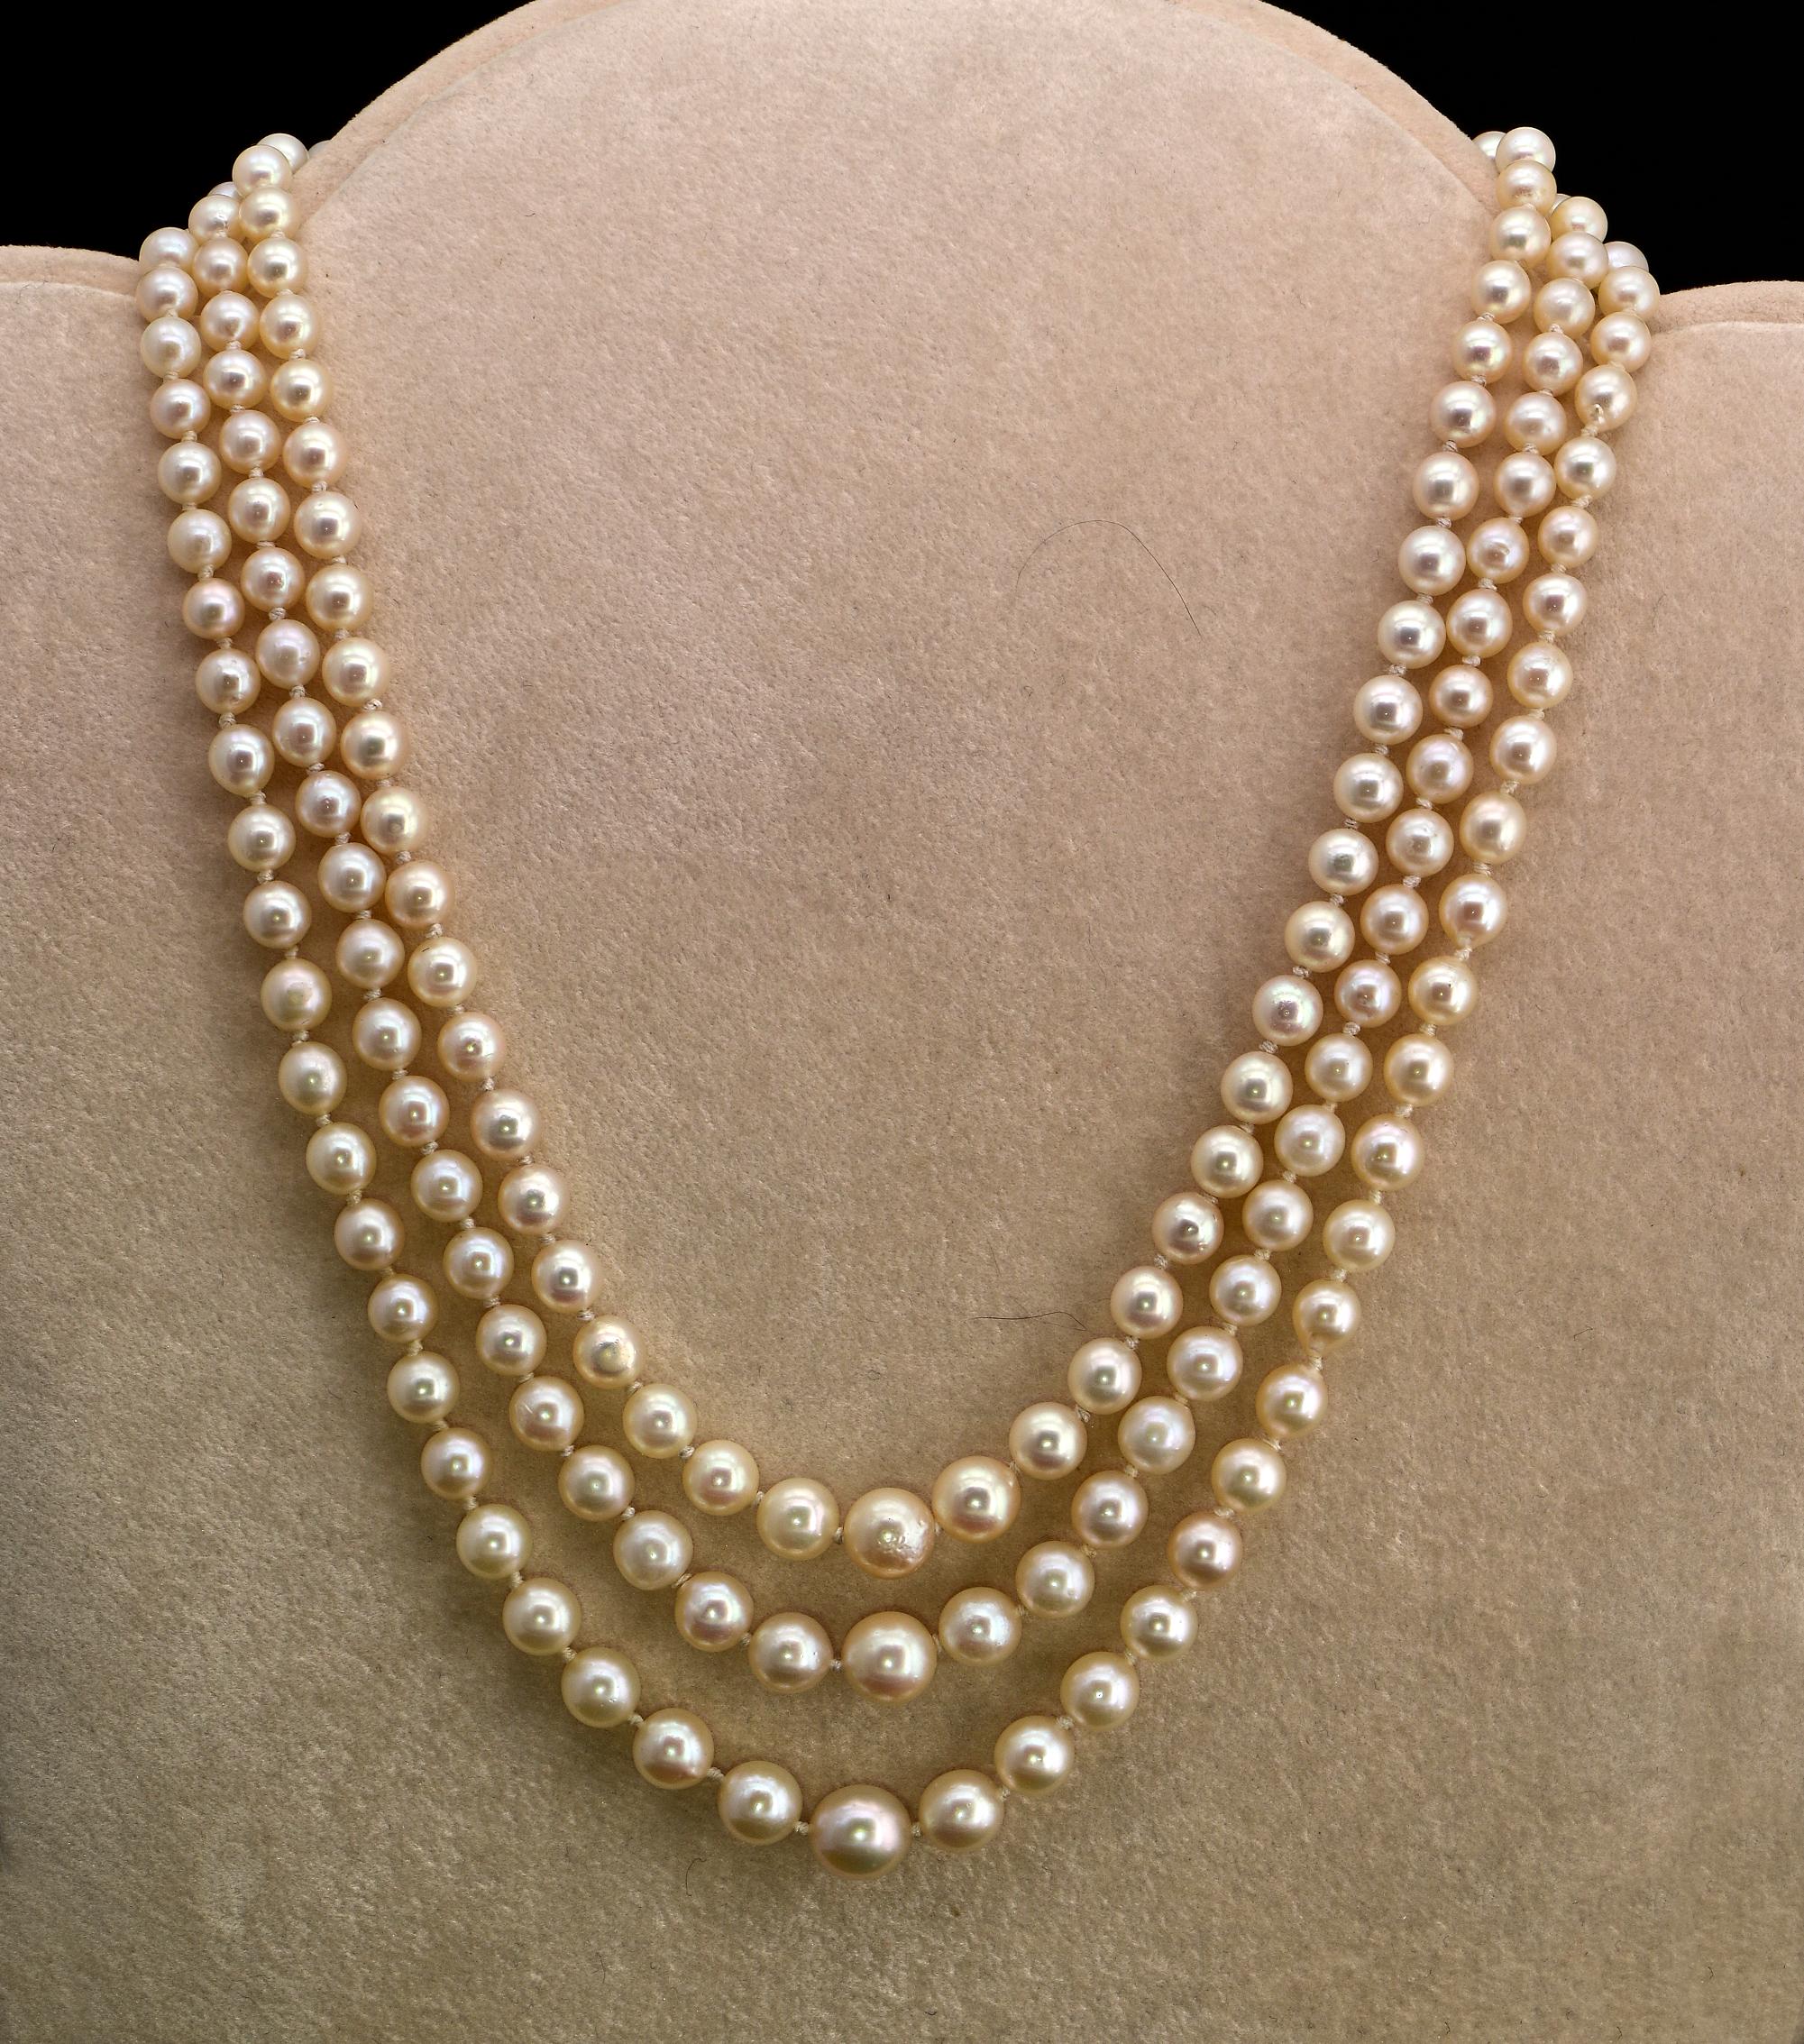 Perlen Allure
Diese zeitlose Art Deco Perlenkette ist 1925 ca.
Kaum zu finden, dreifache Stränge, echte antike, kommt in drei Reihen von antiken Salzwasser Zuchtperlen in der Größe von 4,2 bis 8,2 mm abgestuft.
Wunderschöne cremefarbene Farbe, gut